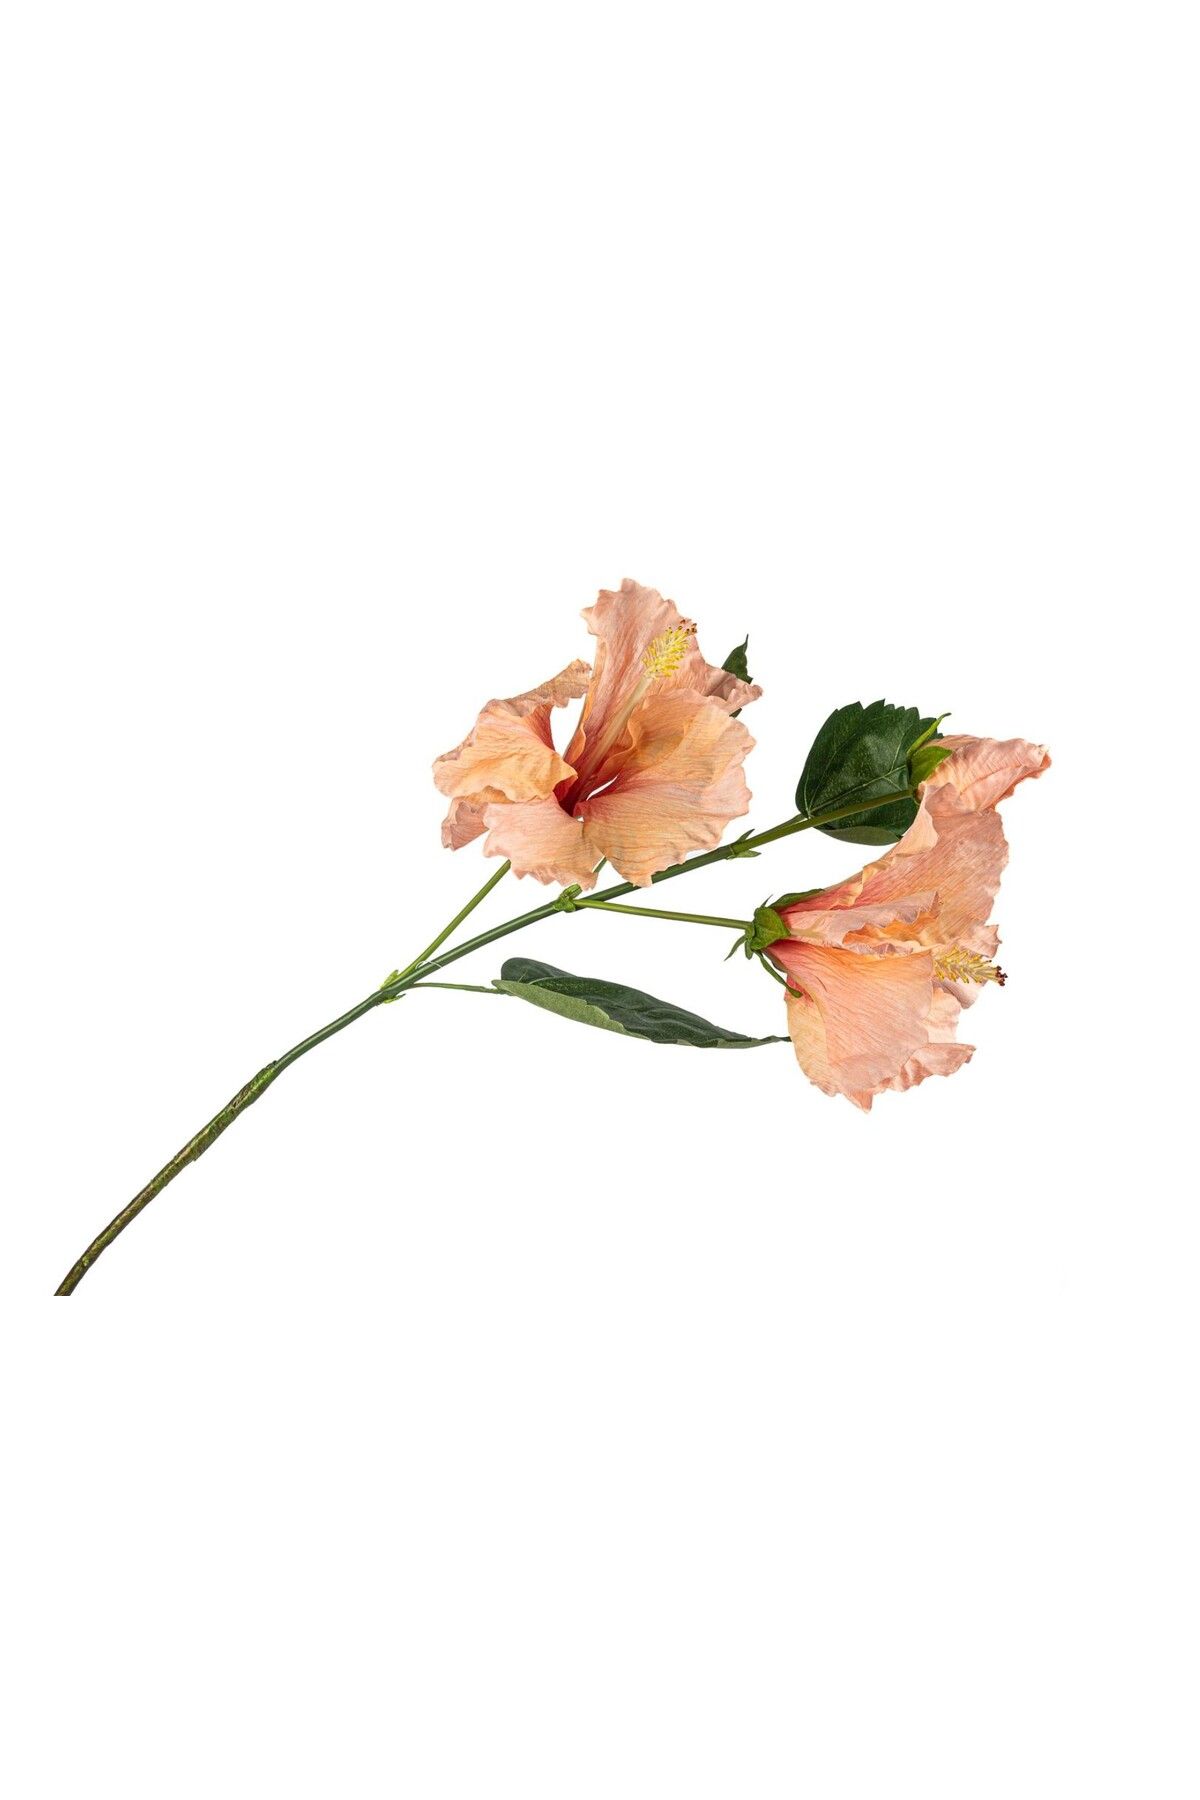 esdekor Açık Pembe Zambak Yapay Çiçek 100cm Dekorasyon Gerçekçi Dal Tamamlayıcı Dekor Obje Bükülür 1 Adet